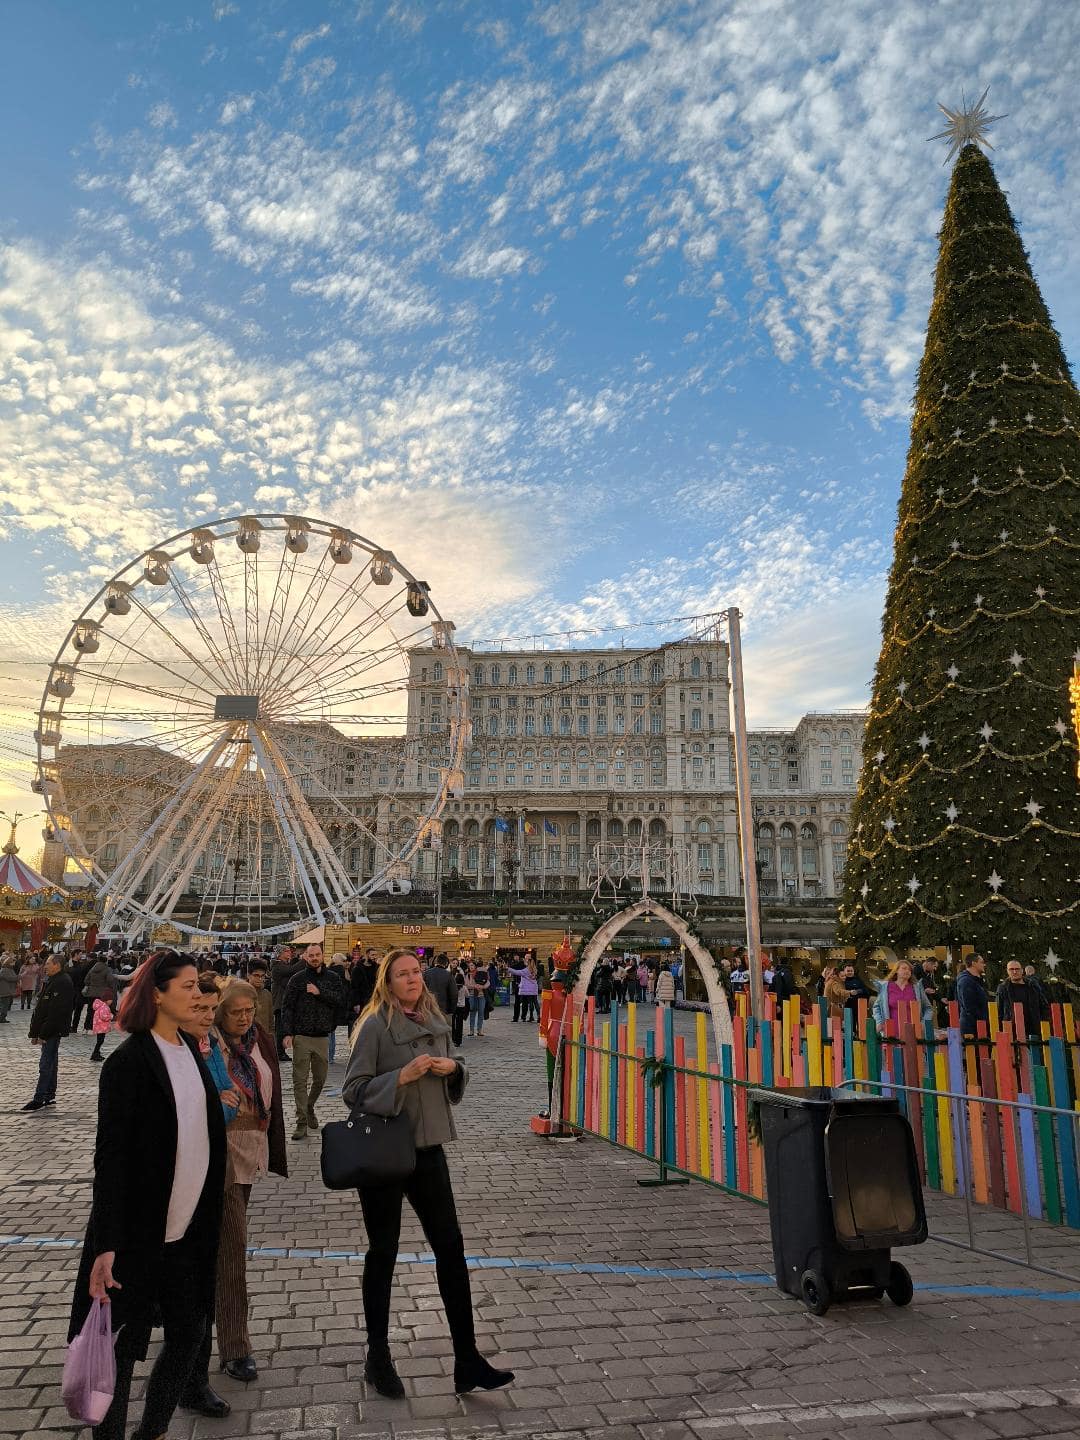 Vianočná Bukurešť. Na fotke je vianočný stromček, ruské koleso a v pozadí budova Palace of Parliament.